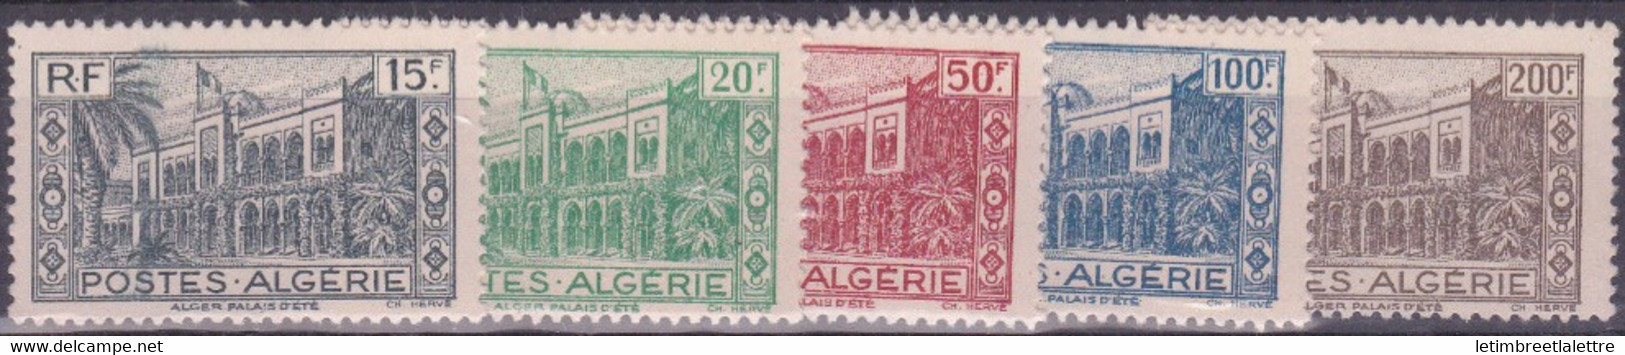 Algérie - YT N° 200 à 204 ** - Neuf Sans Charnière - 1944 - Nuovi